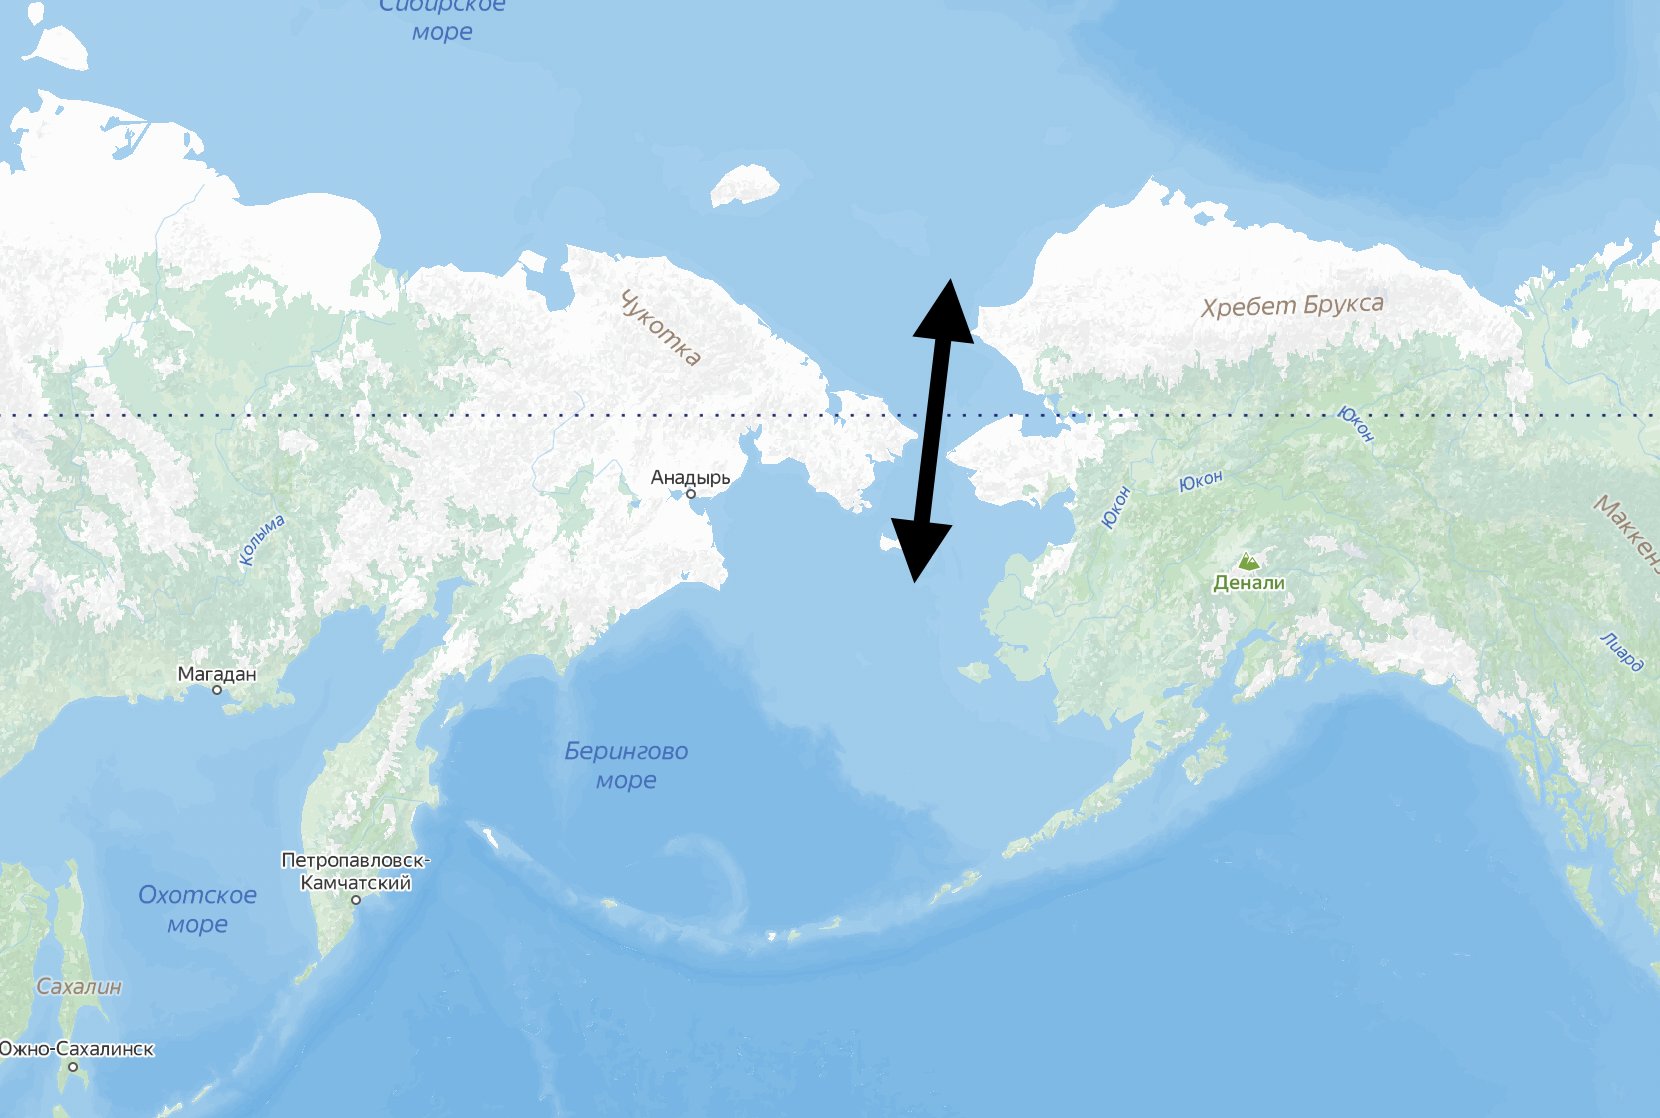 Найти на карте берингов пролив. Аляска Берингов пролив. Центральная часть Берингова пролива. Северная Америка Берингов пролив. Берингов пролив на карте.